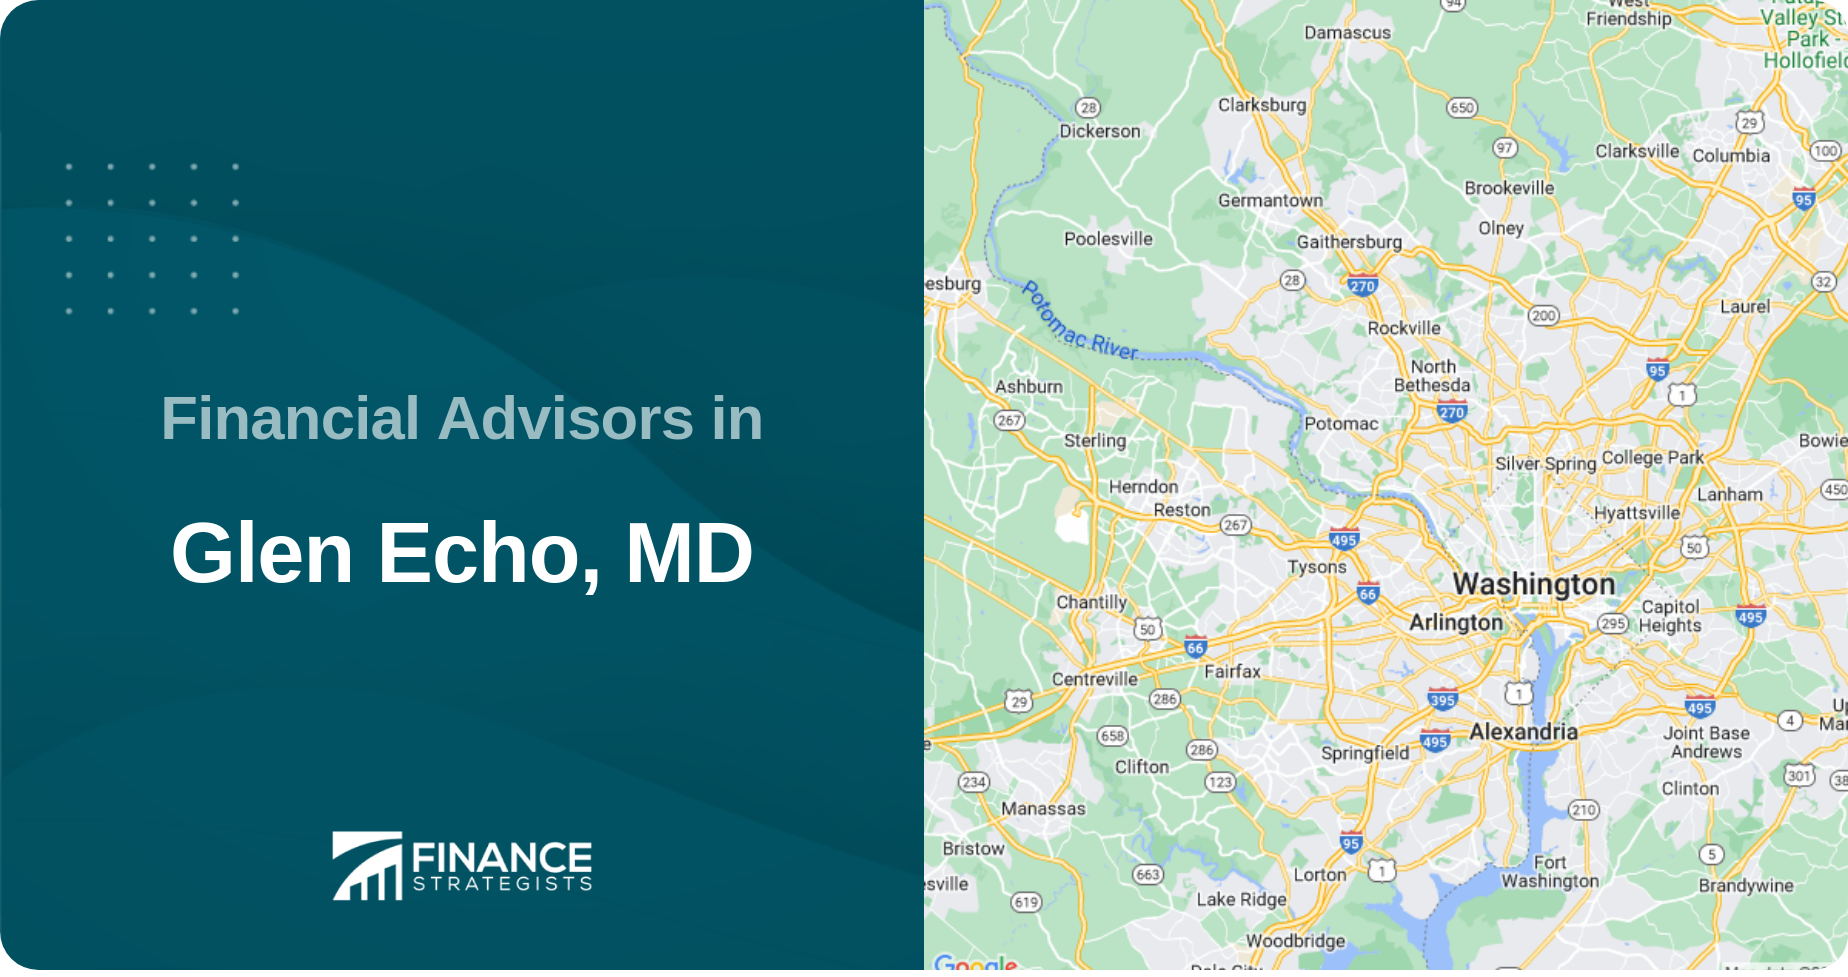 Financial Advisors in Glen Echo, MD